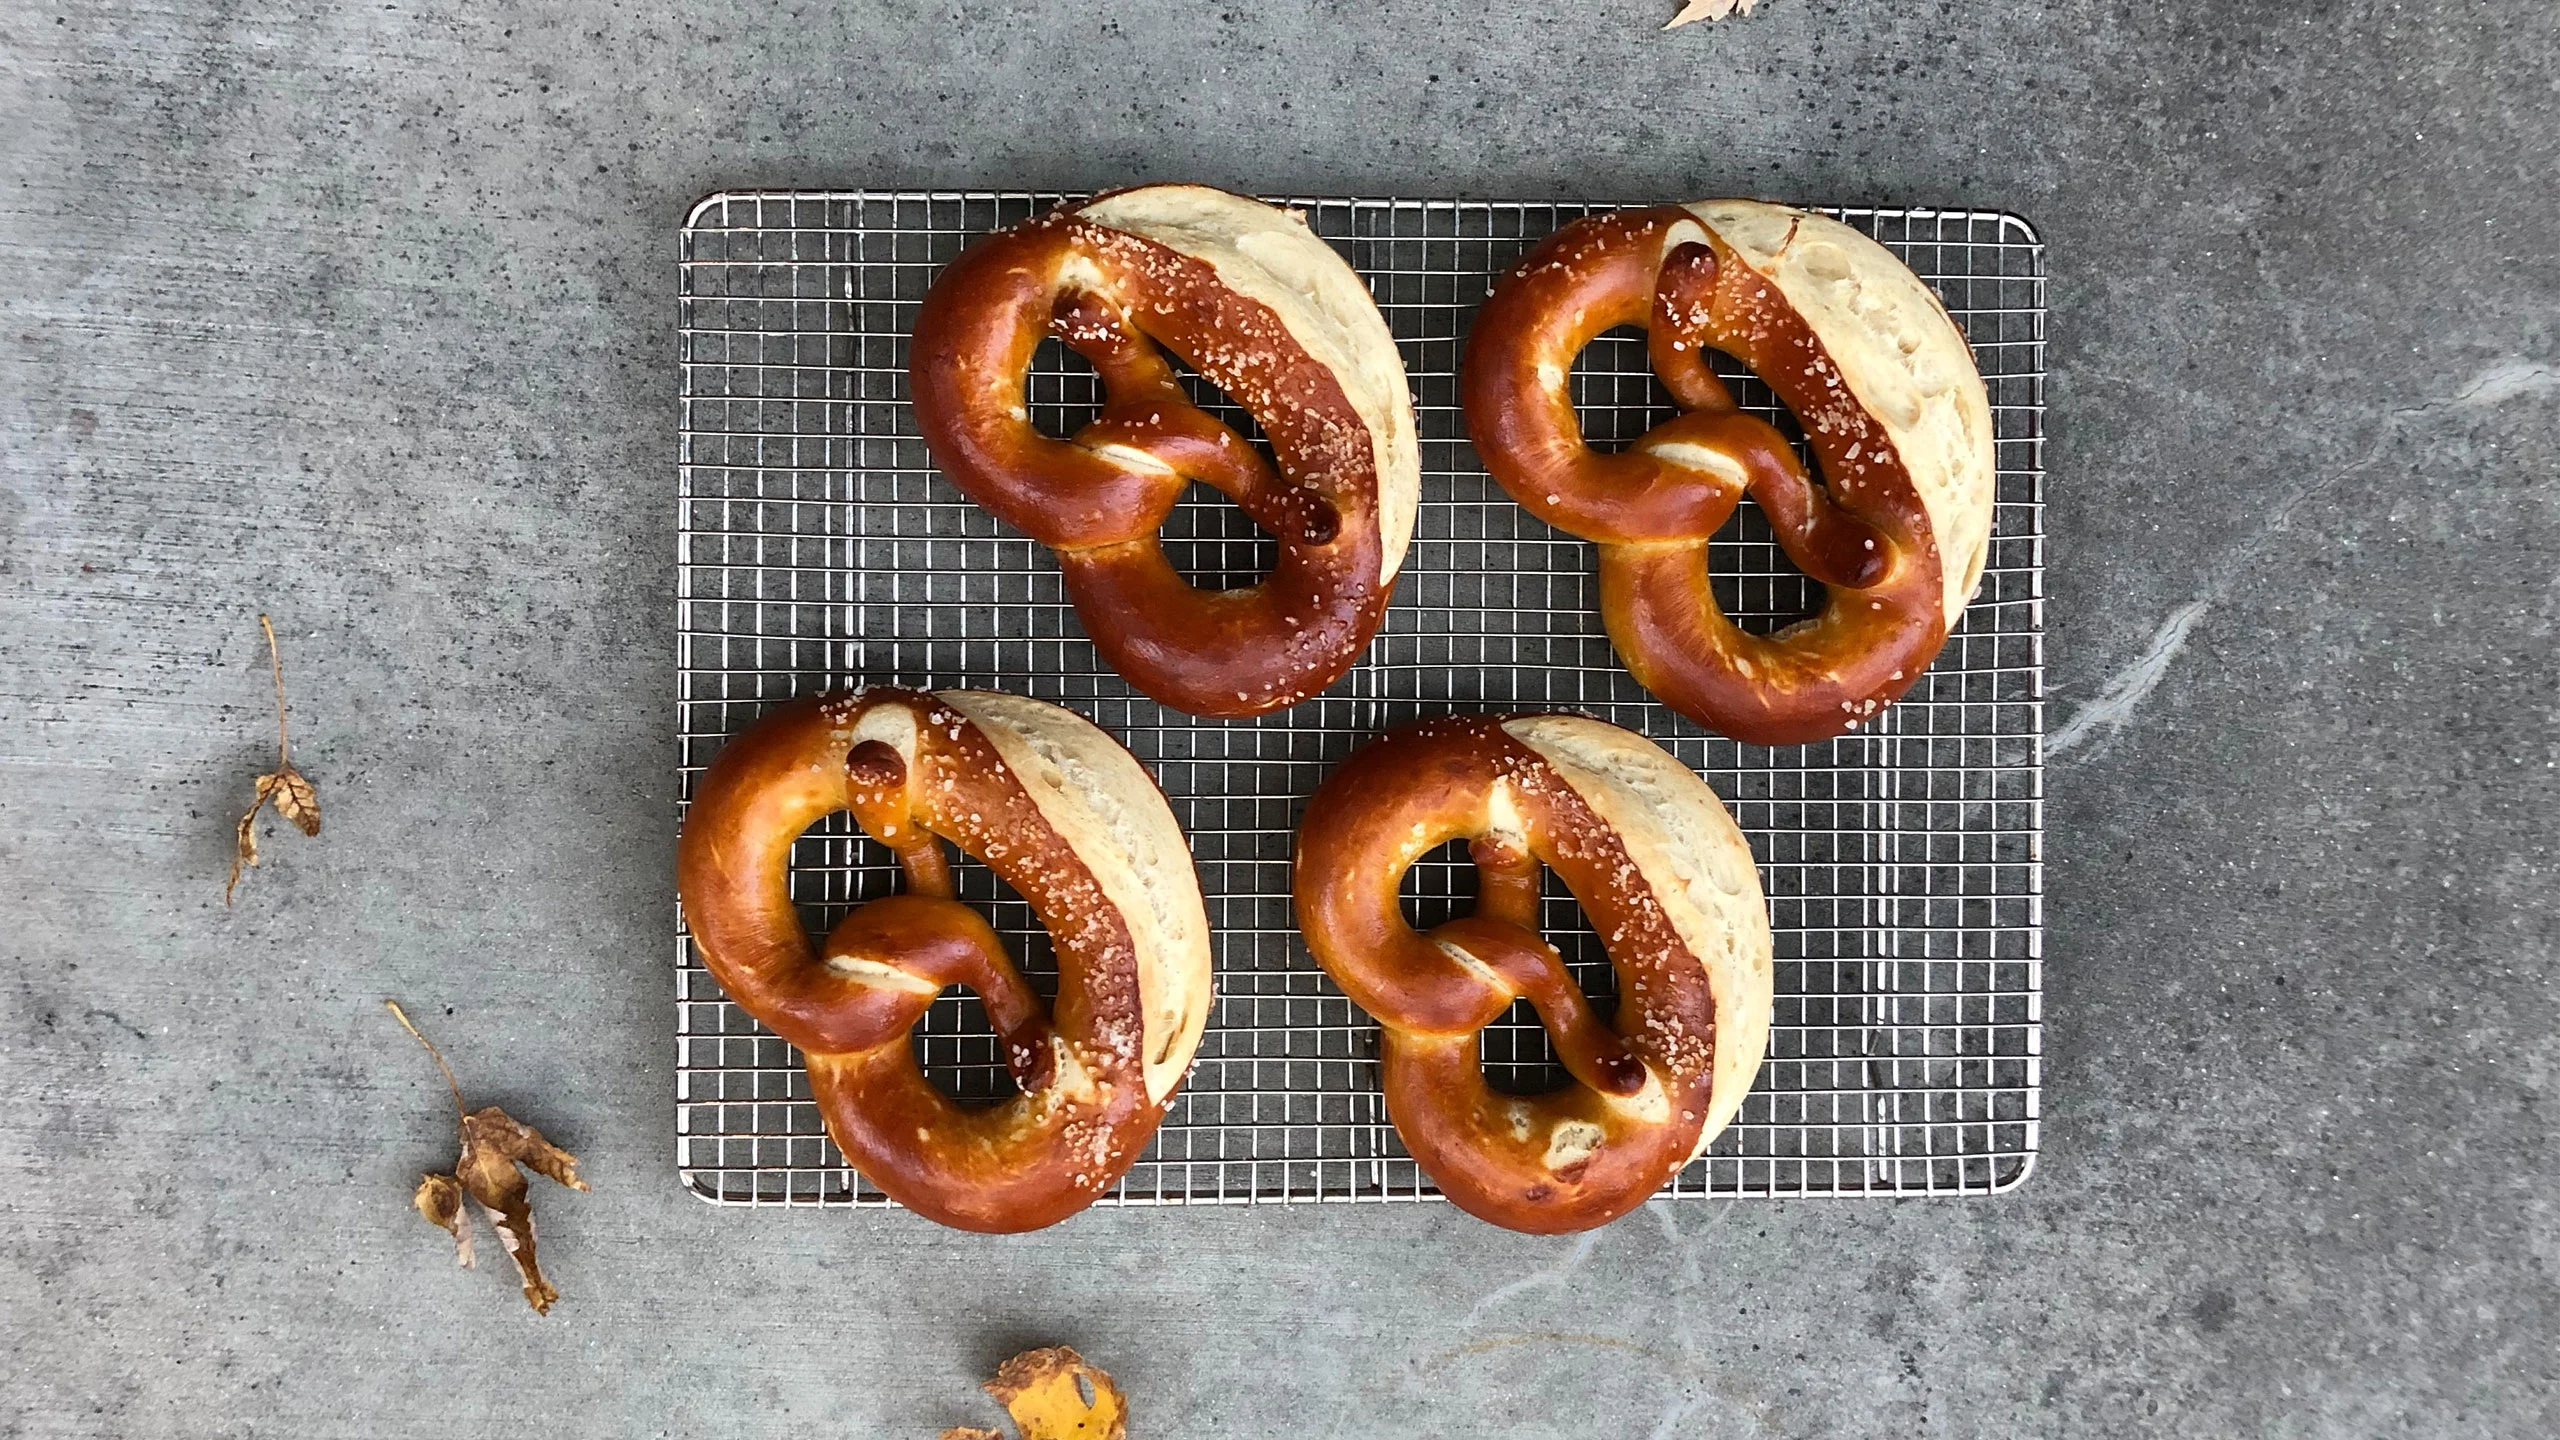 ¿Te gustan los pretzels? Tenemos una receta fácil y práctica